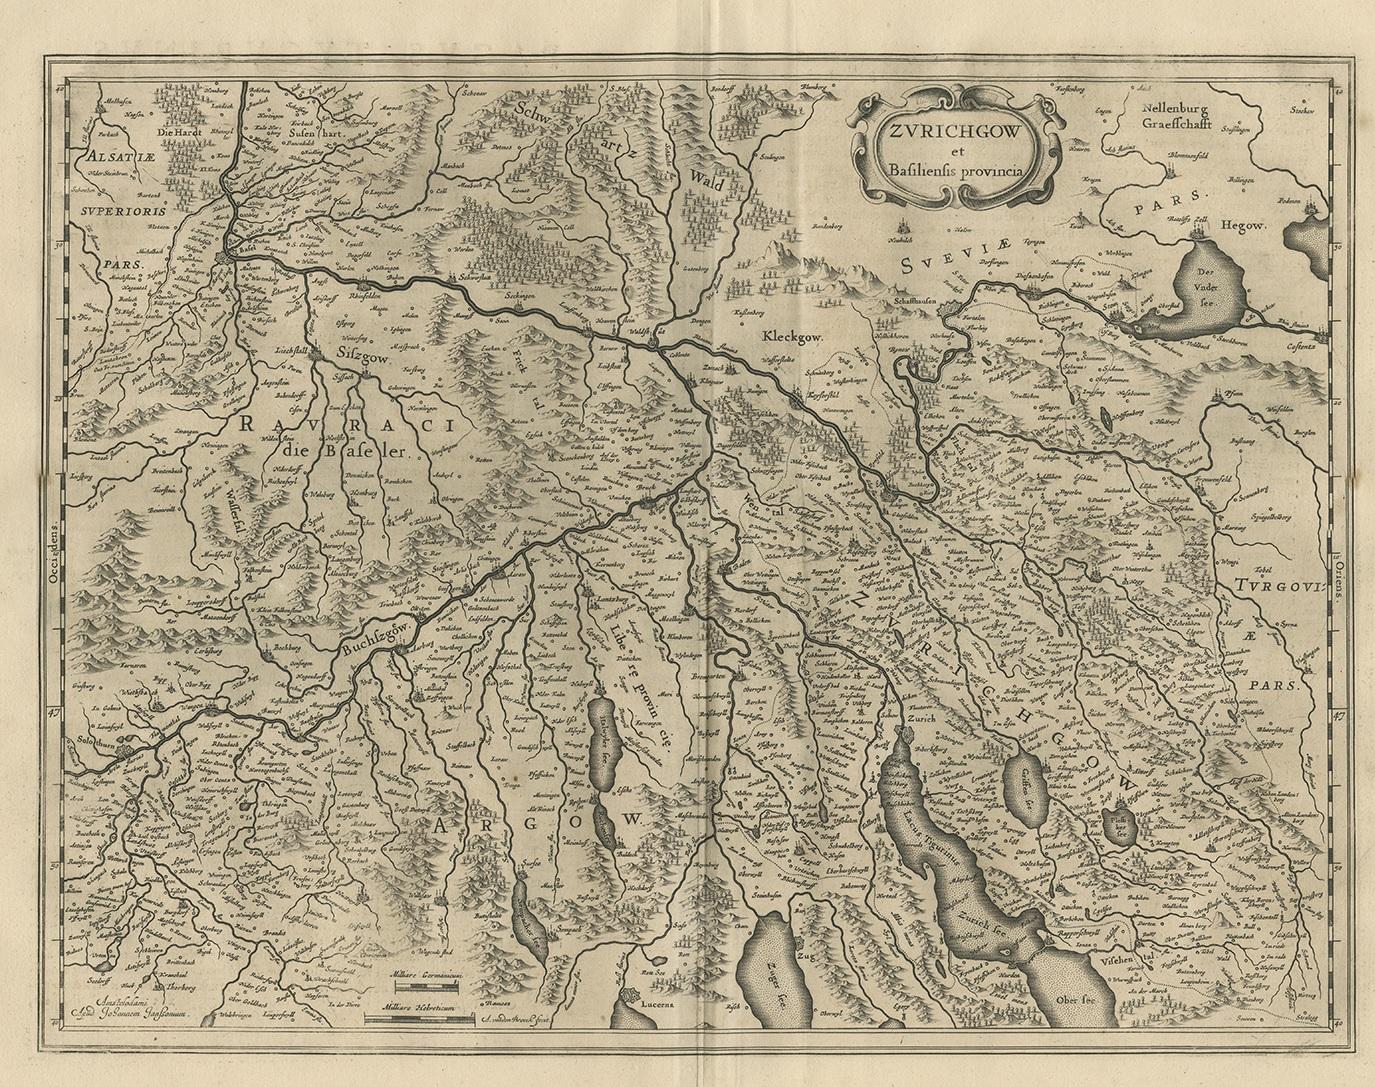 Antike Karte 'Zurichgow et Basiliensis provincia'. Detaillierte Karte der Nordschweiz, einschließlich Zürich und Basel. Diese Karte stammt aus dem 